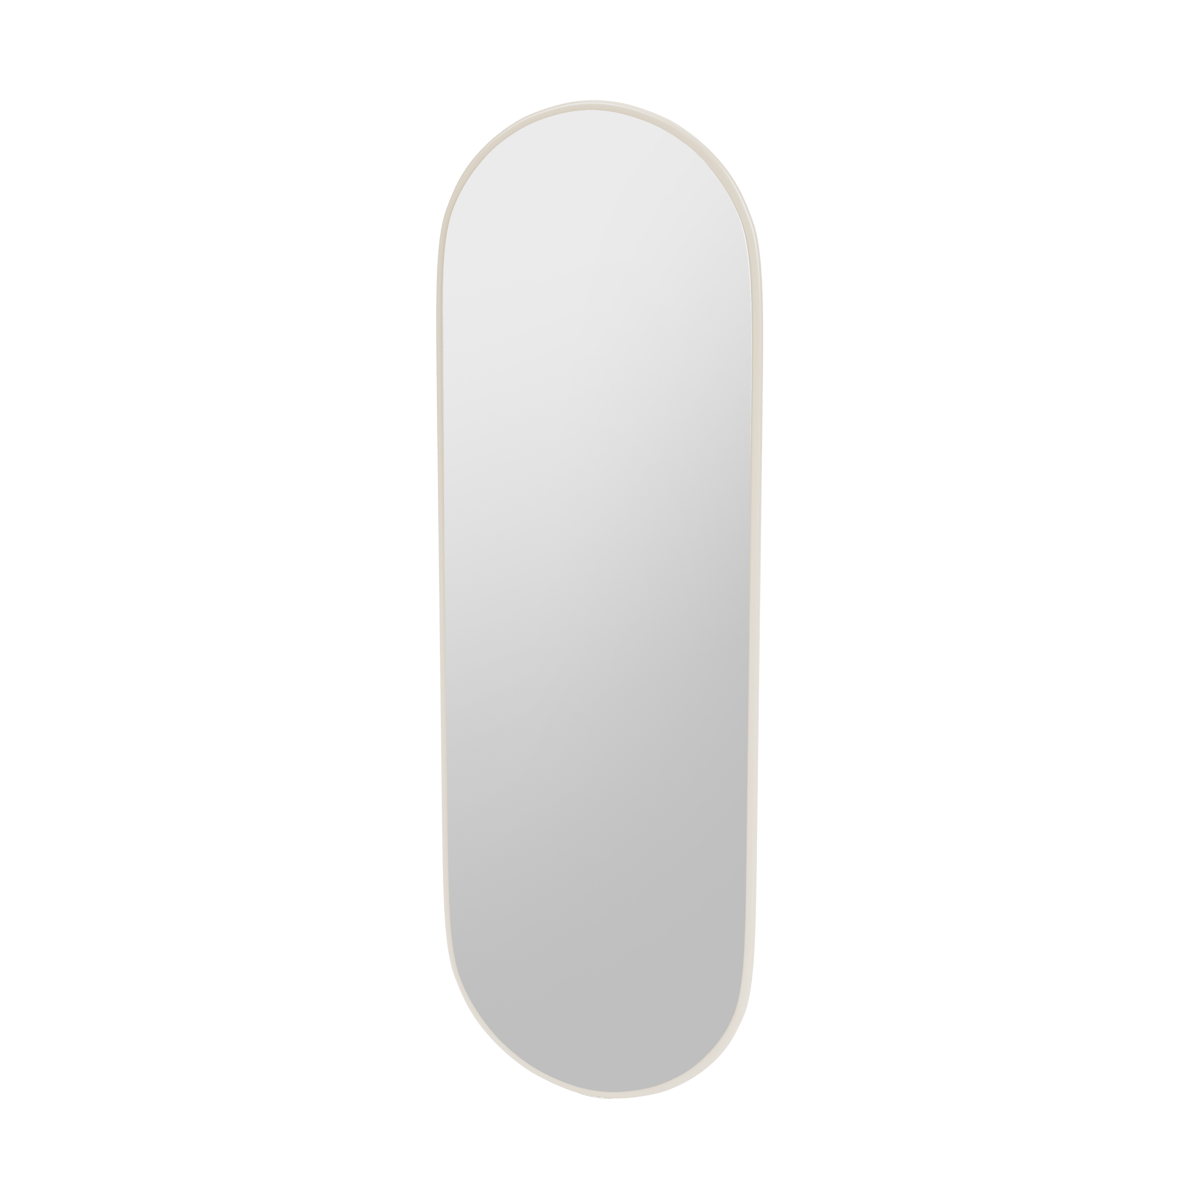 Montana FIGUUR Mirror Spiegel - SP824R Oat